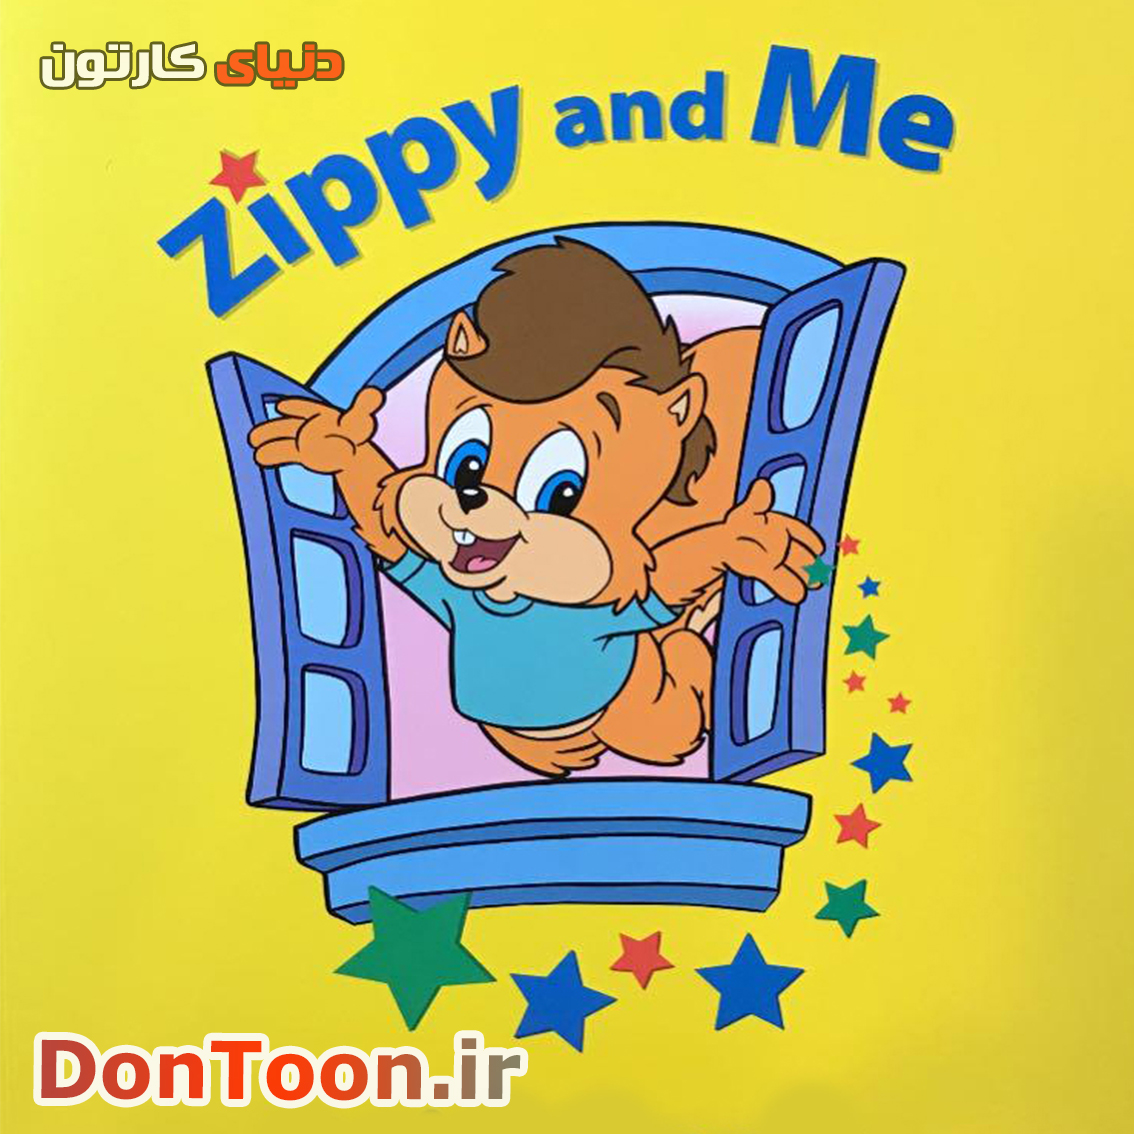 دانلود مجموعه زیپی و من zippy and me - دنیای کارتون